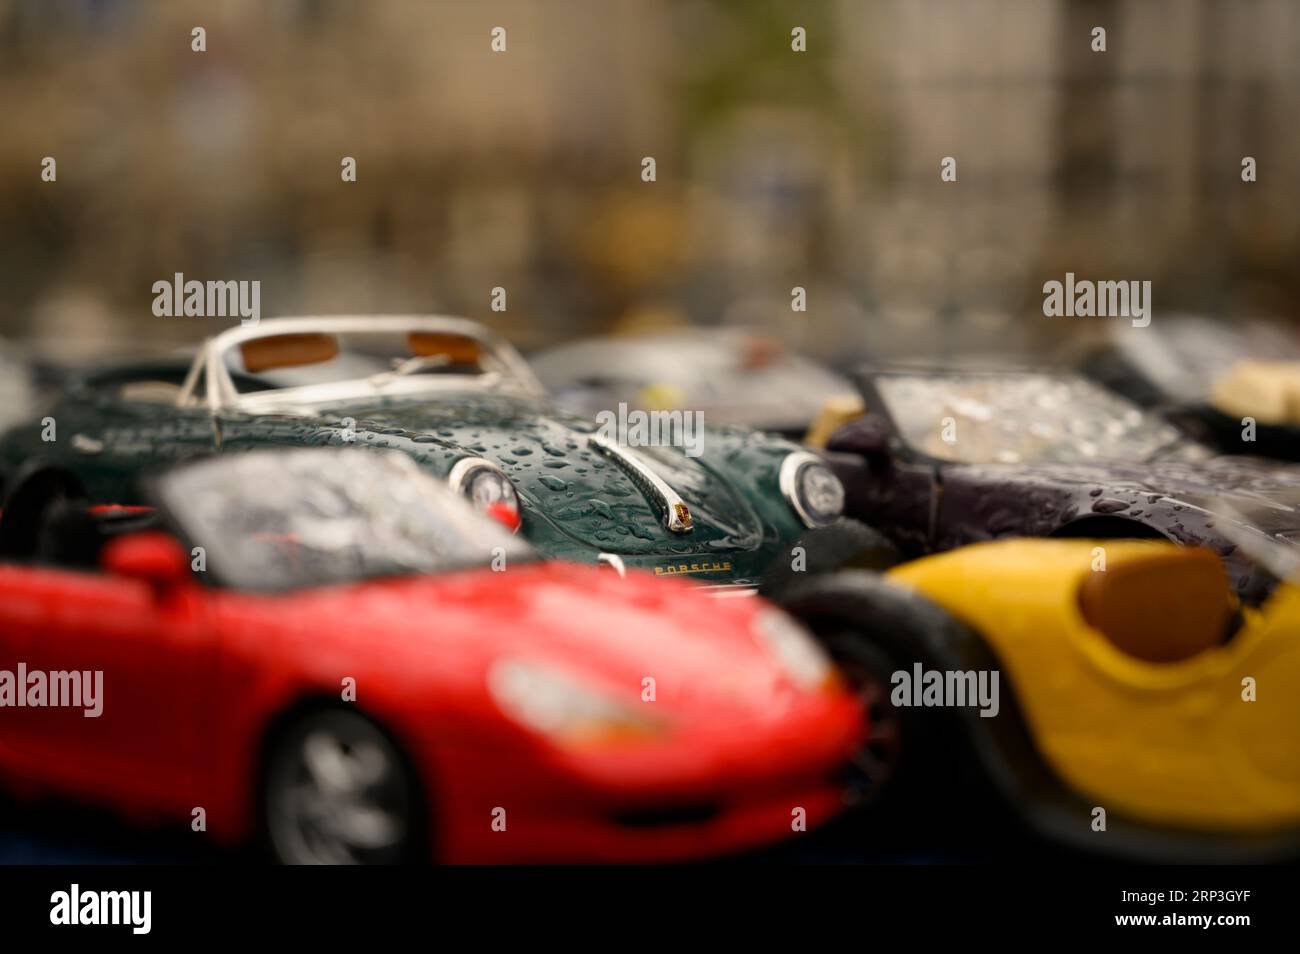 Spielwaren Express - Majorette Spielzeugauto Deluxe Cars Porsche